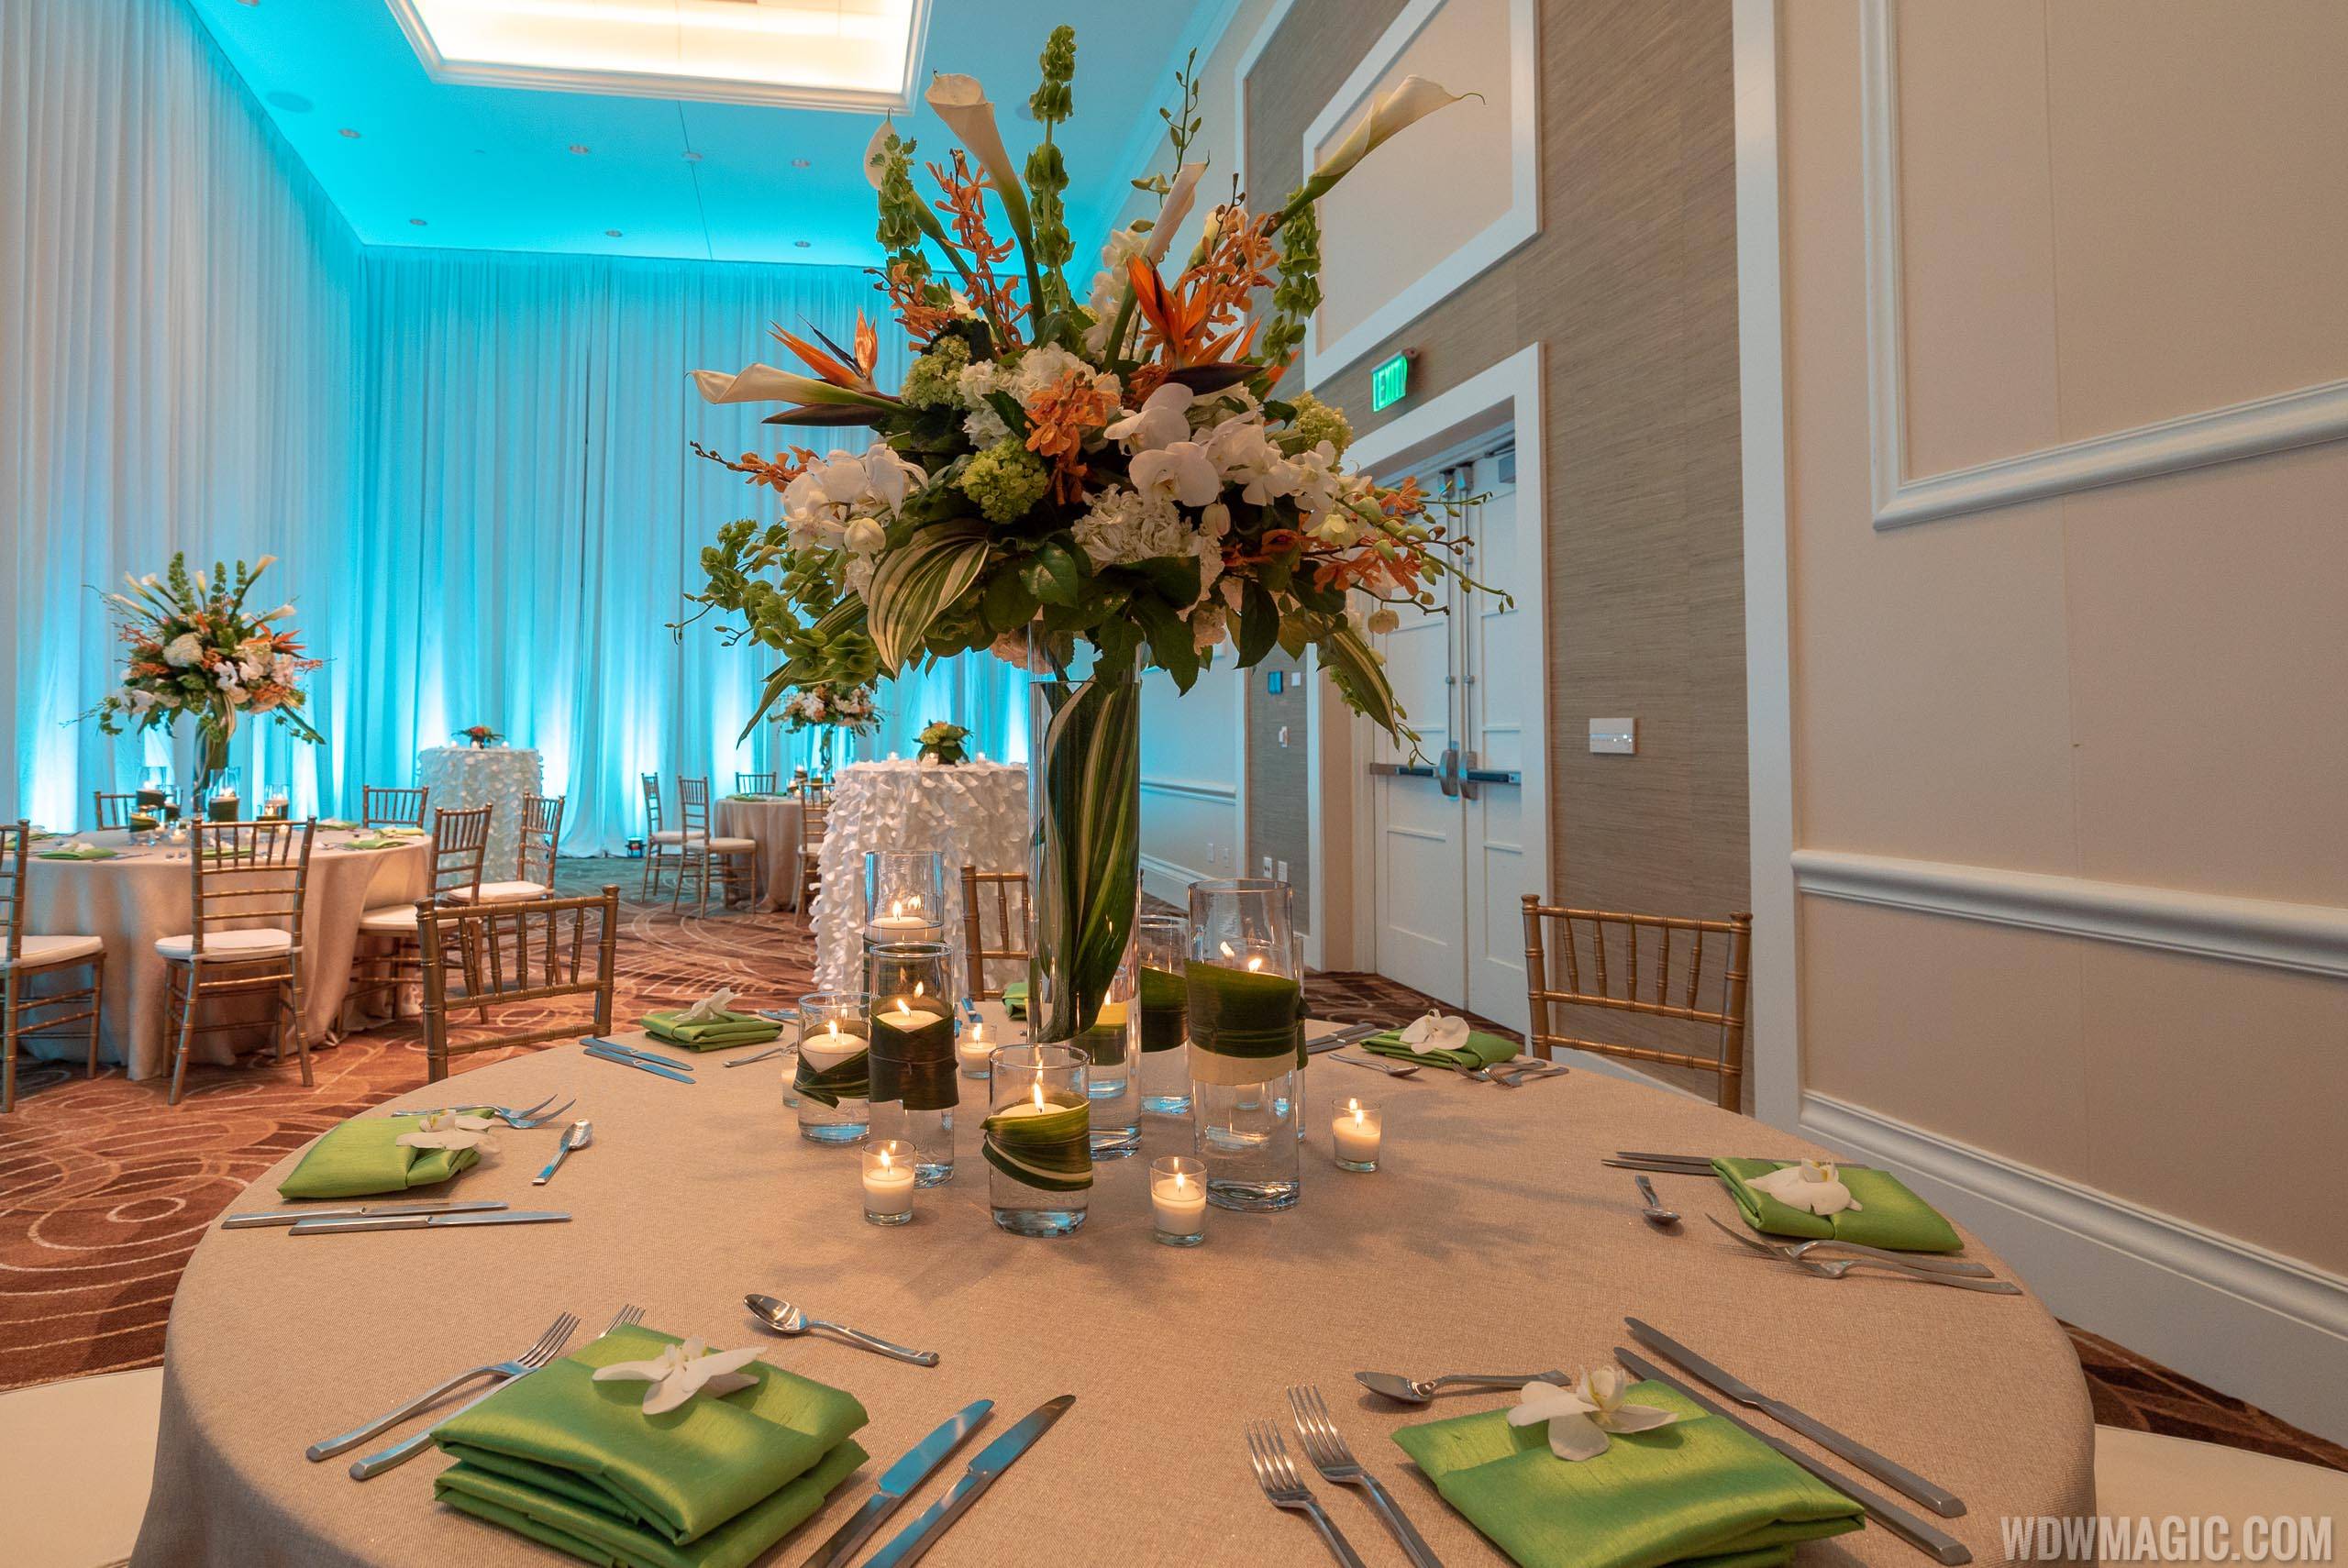 Margaritaville Resort Orlando - Meeting Space wedding setup